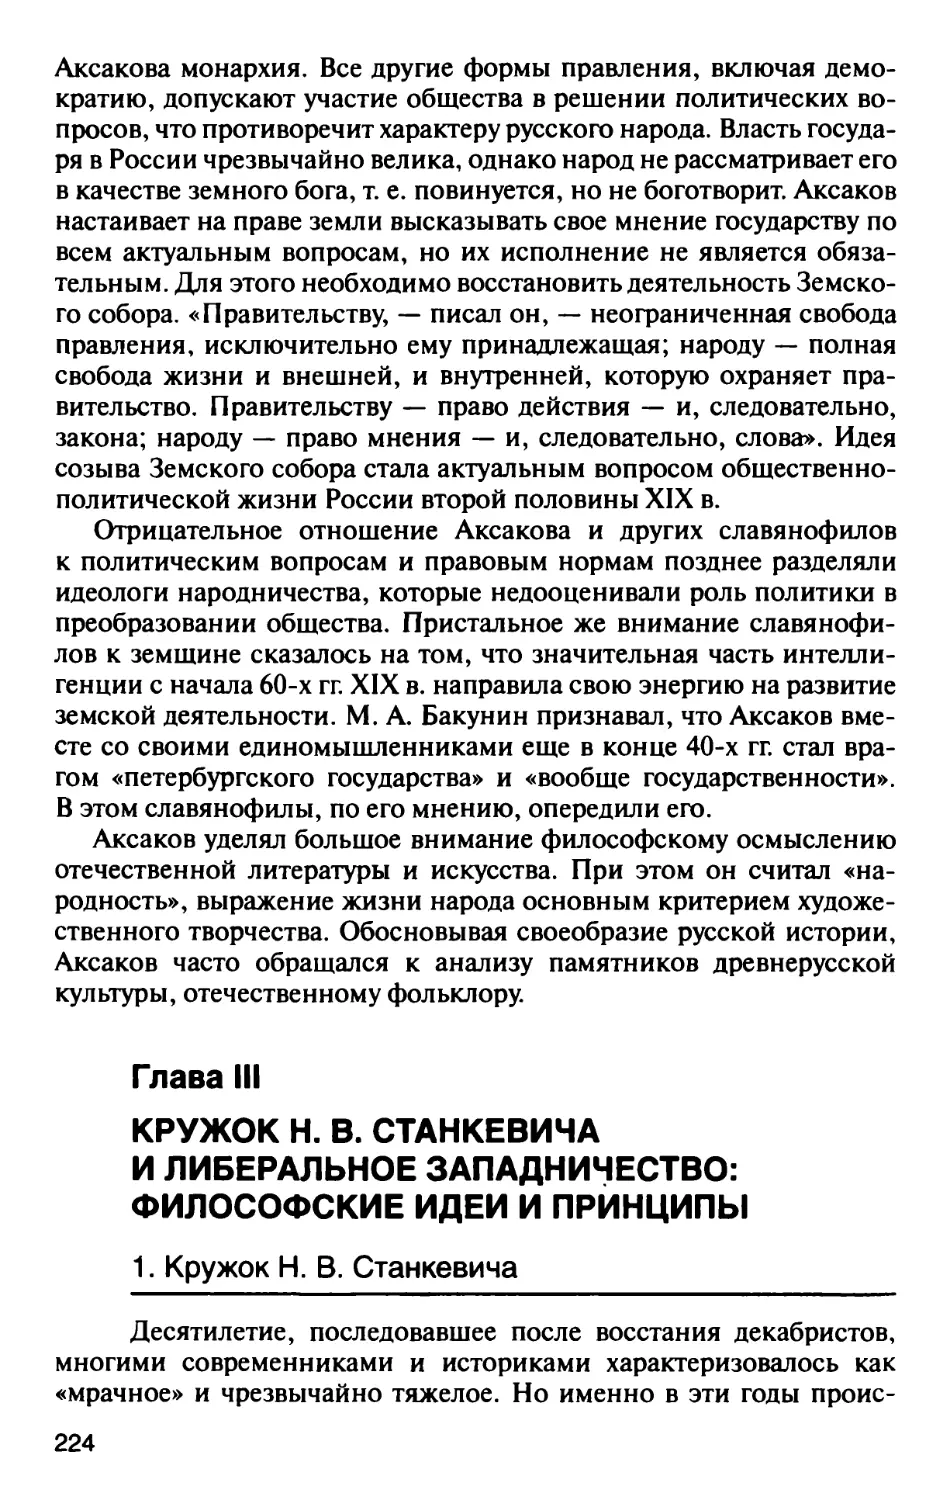 Глава III. Кружок Н.В. Станкевича и либеральное западничество: философские идеи и принципы